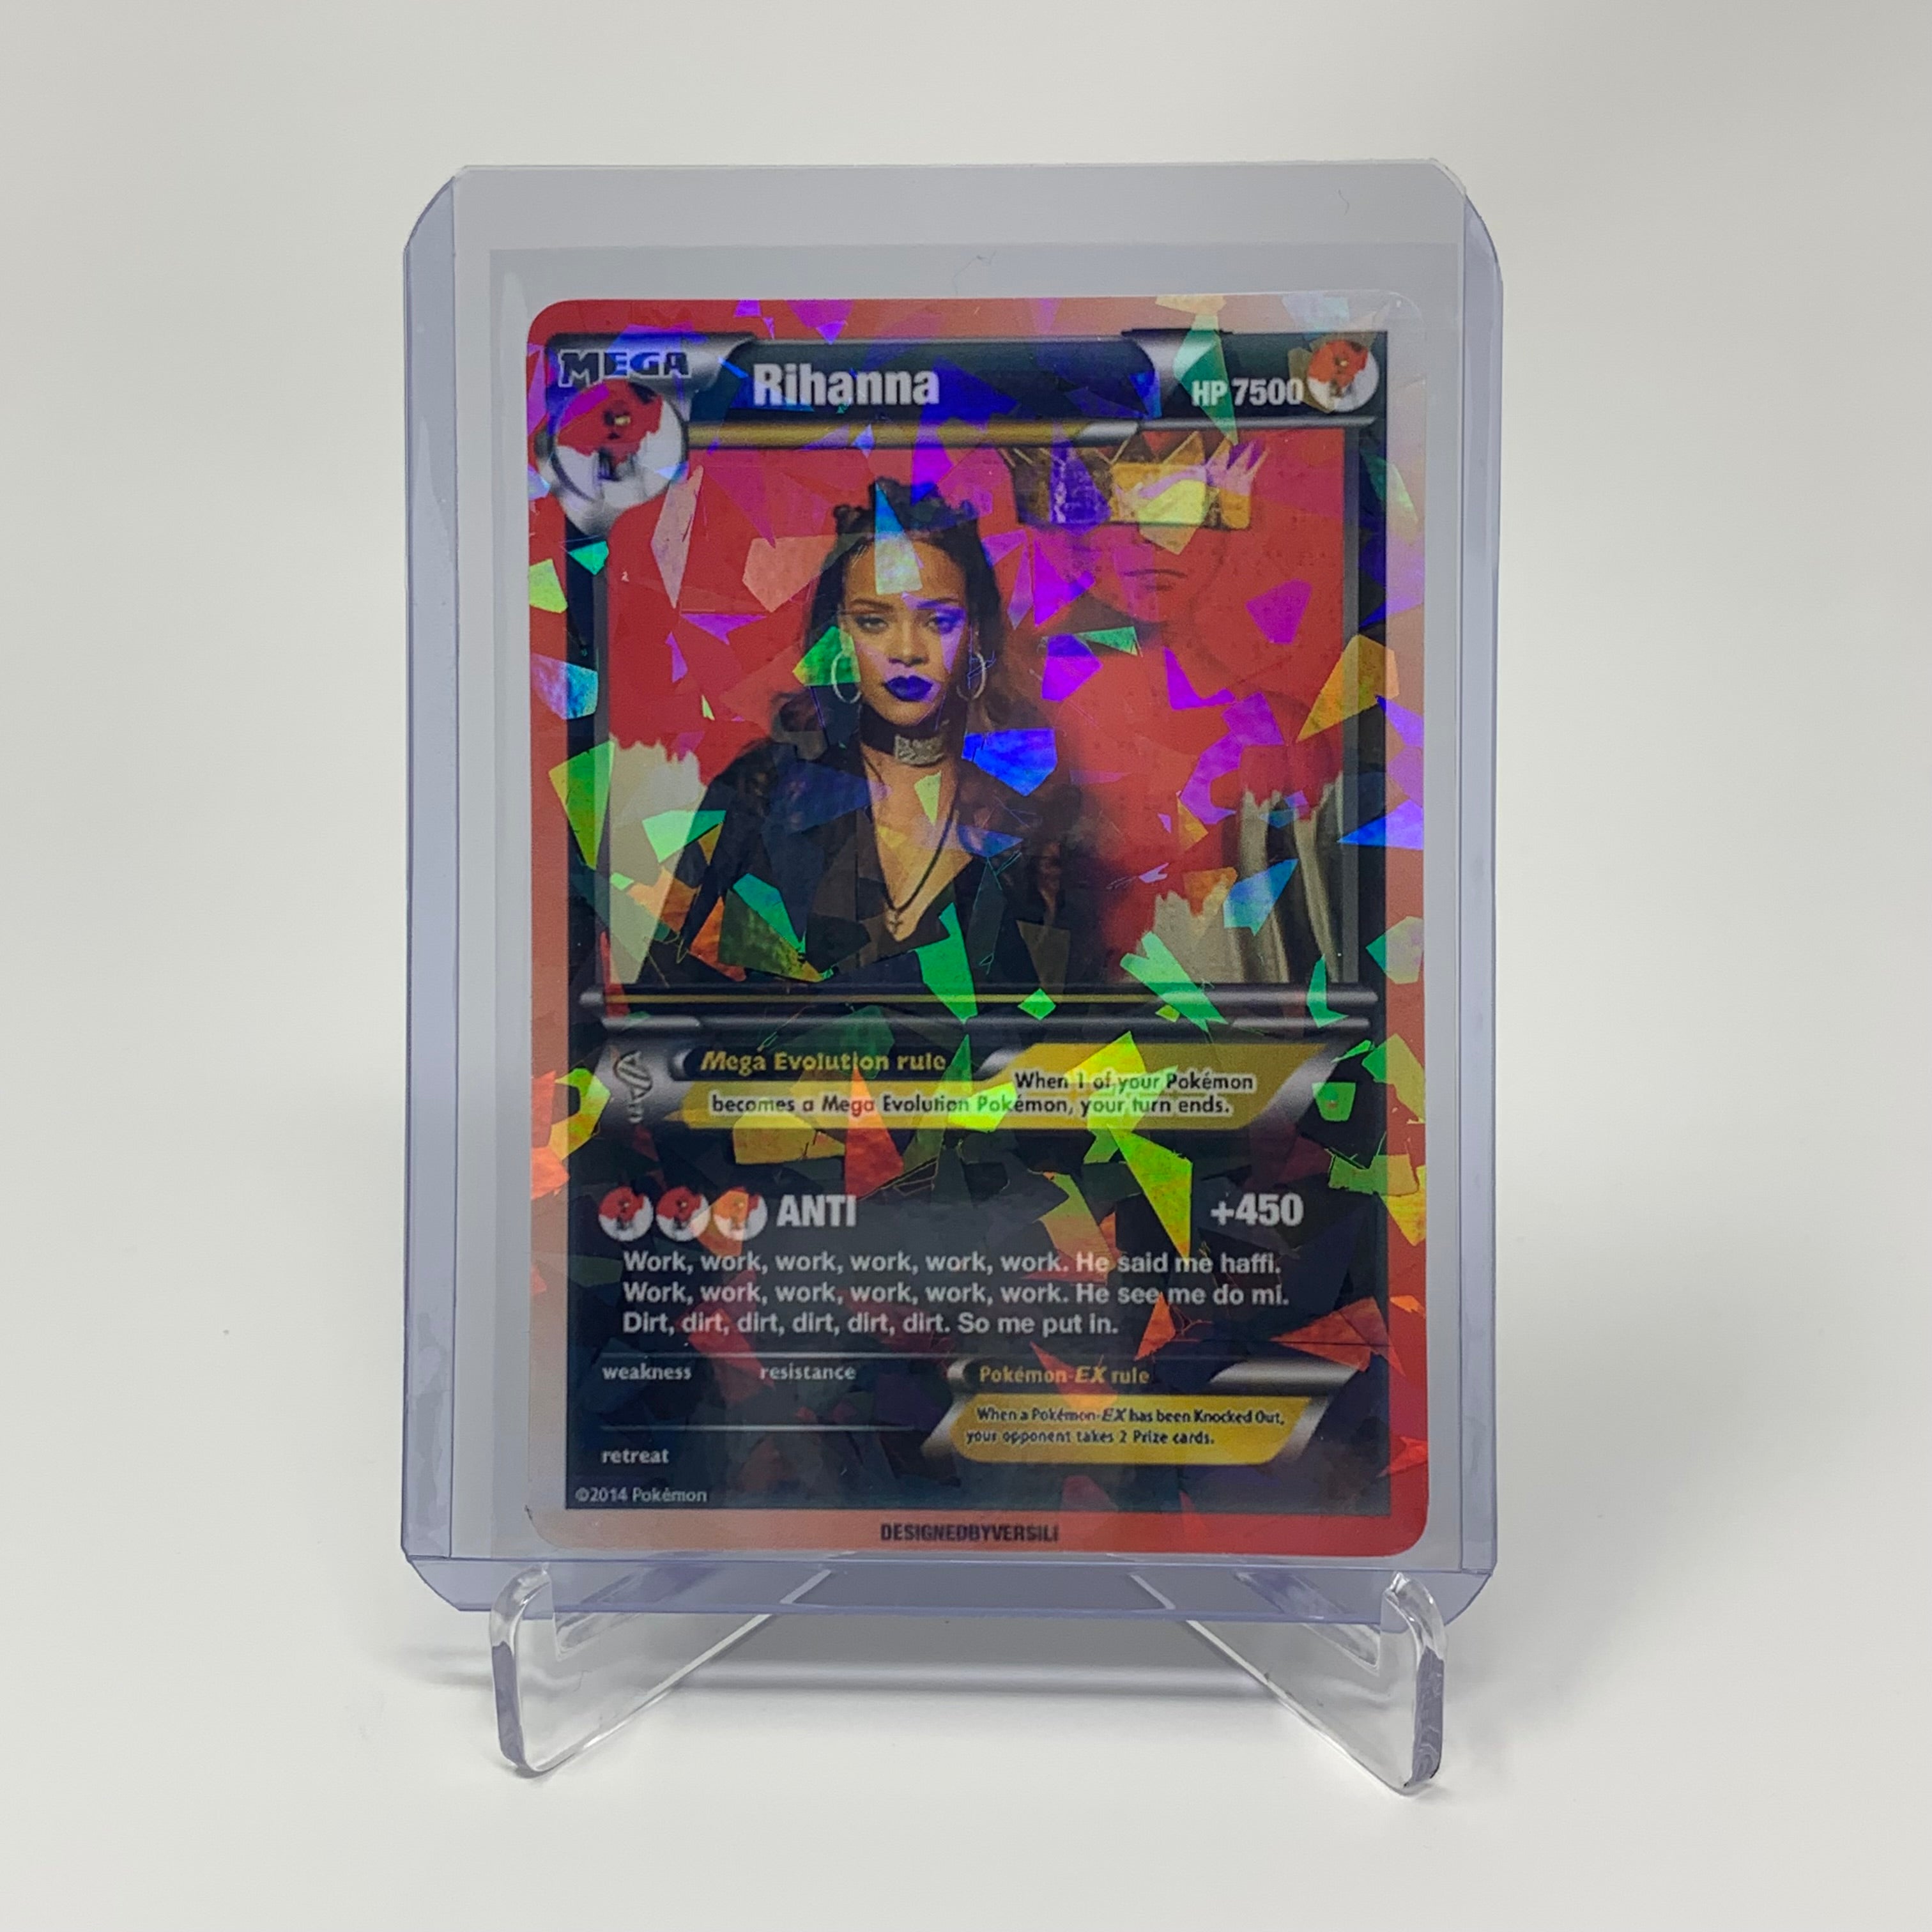 Rihanna Pokémon Card